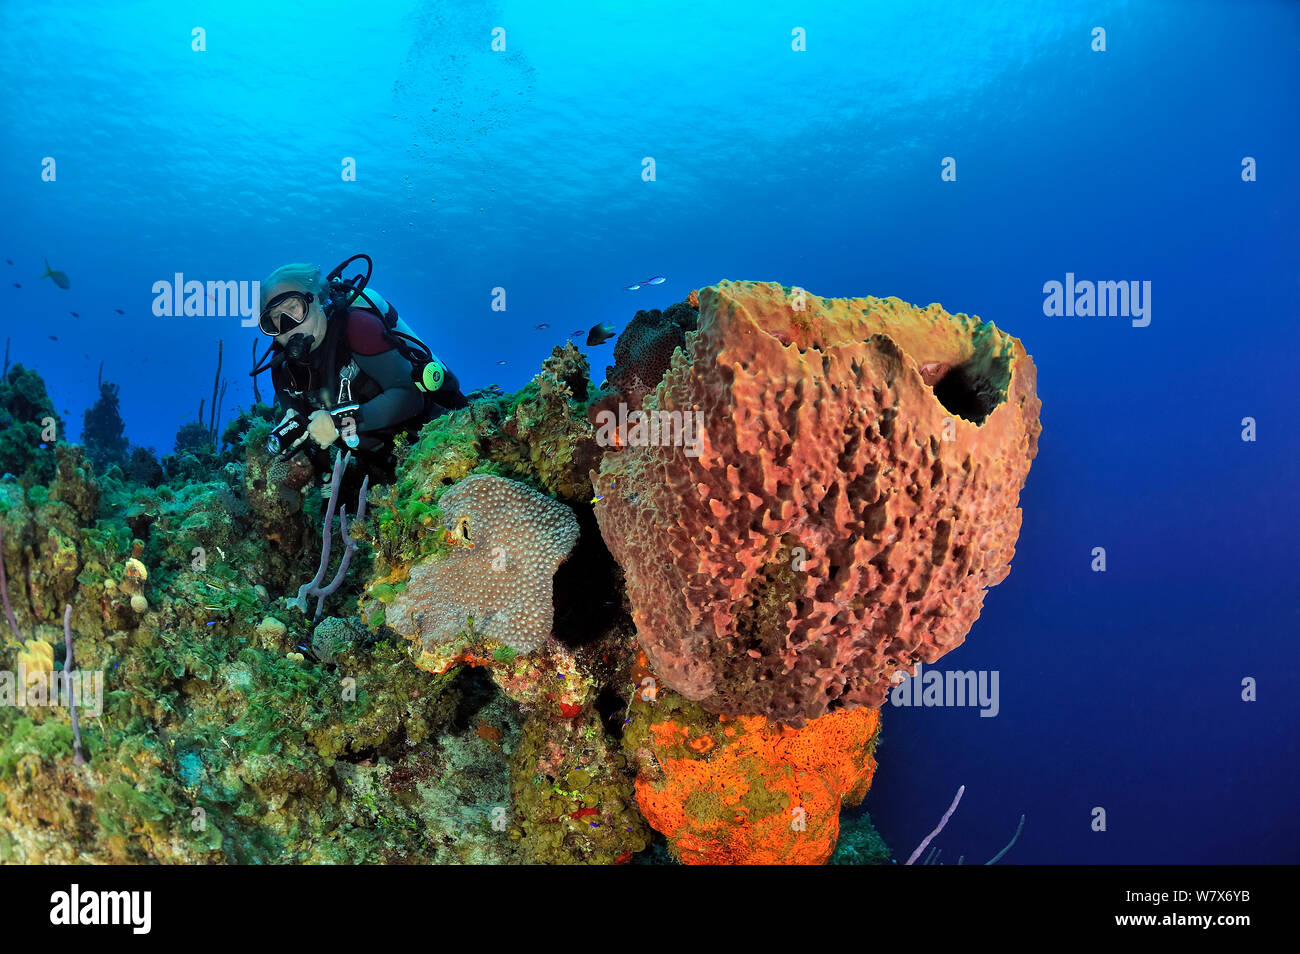 Taucher an Korallenriff mit Riesen fass Schwamm (Xestospongia muta), Elephant ear Schwamm (Agelas clathrodes) und Korallen, San Salvador/Colombus Island, Bahamas. Karibik. Juni 2013. Stockfoto